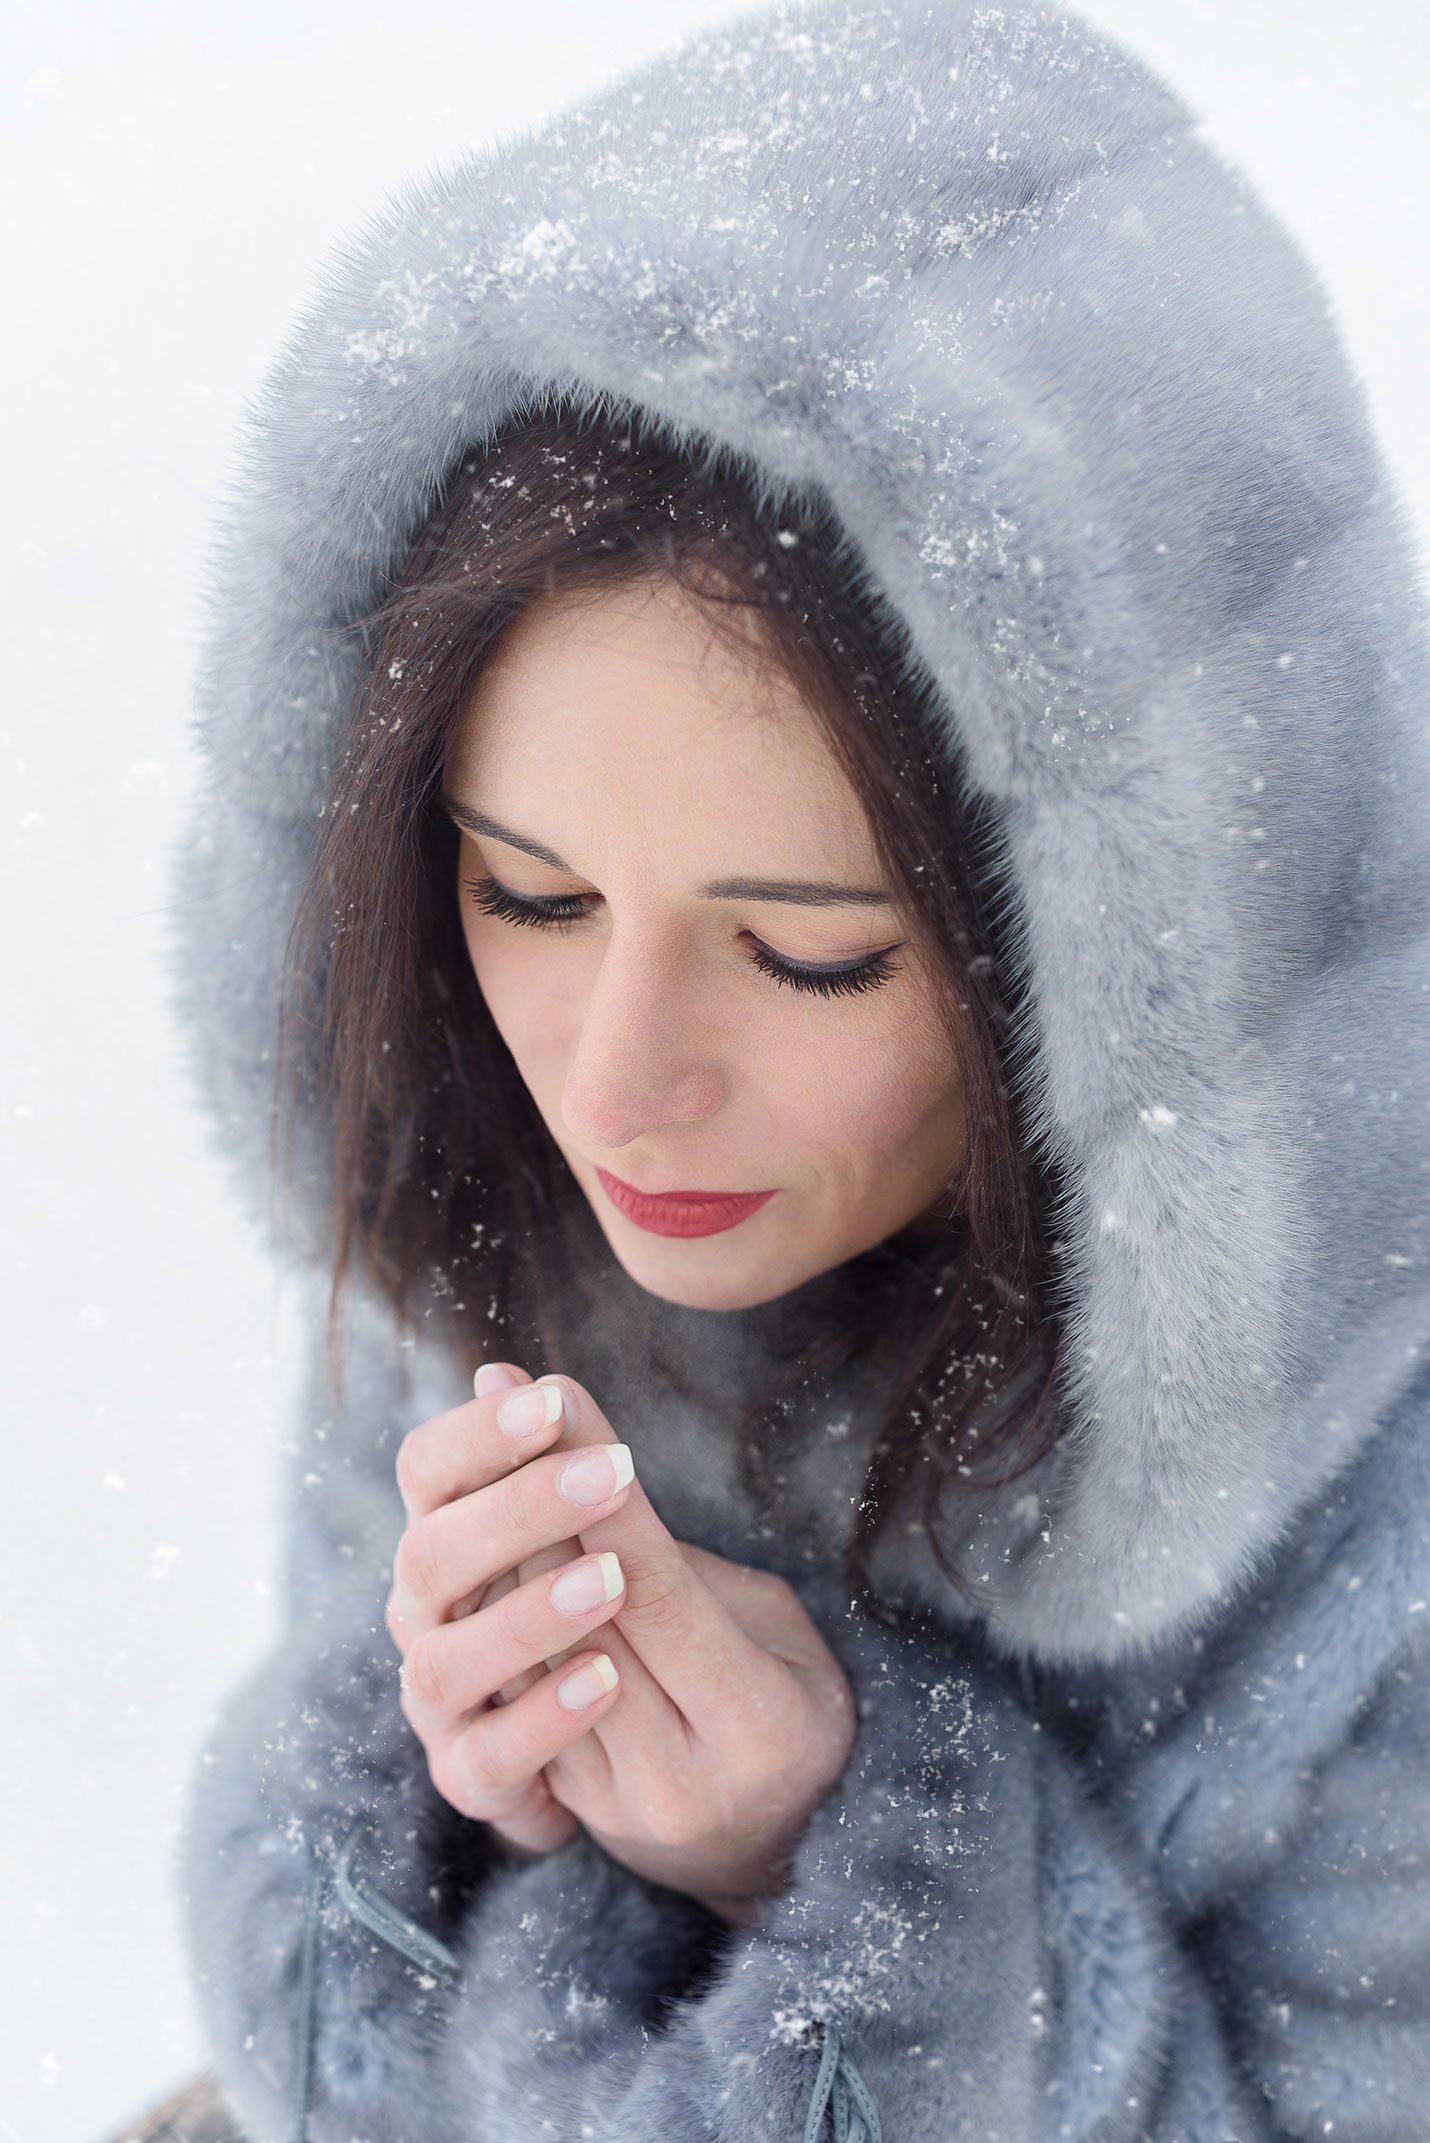 Frauen Portraitfotografie im Winter auf der Natur. Frost und Schnee